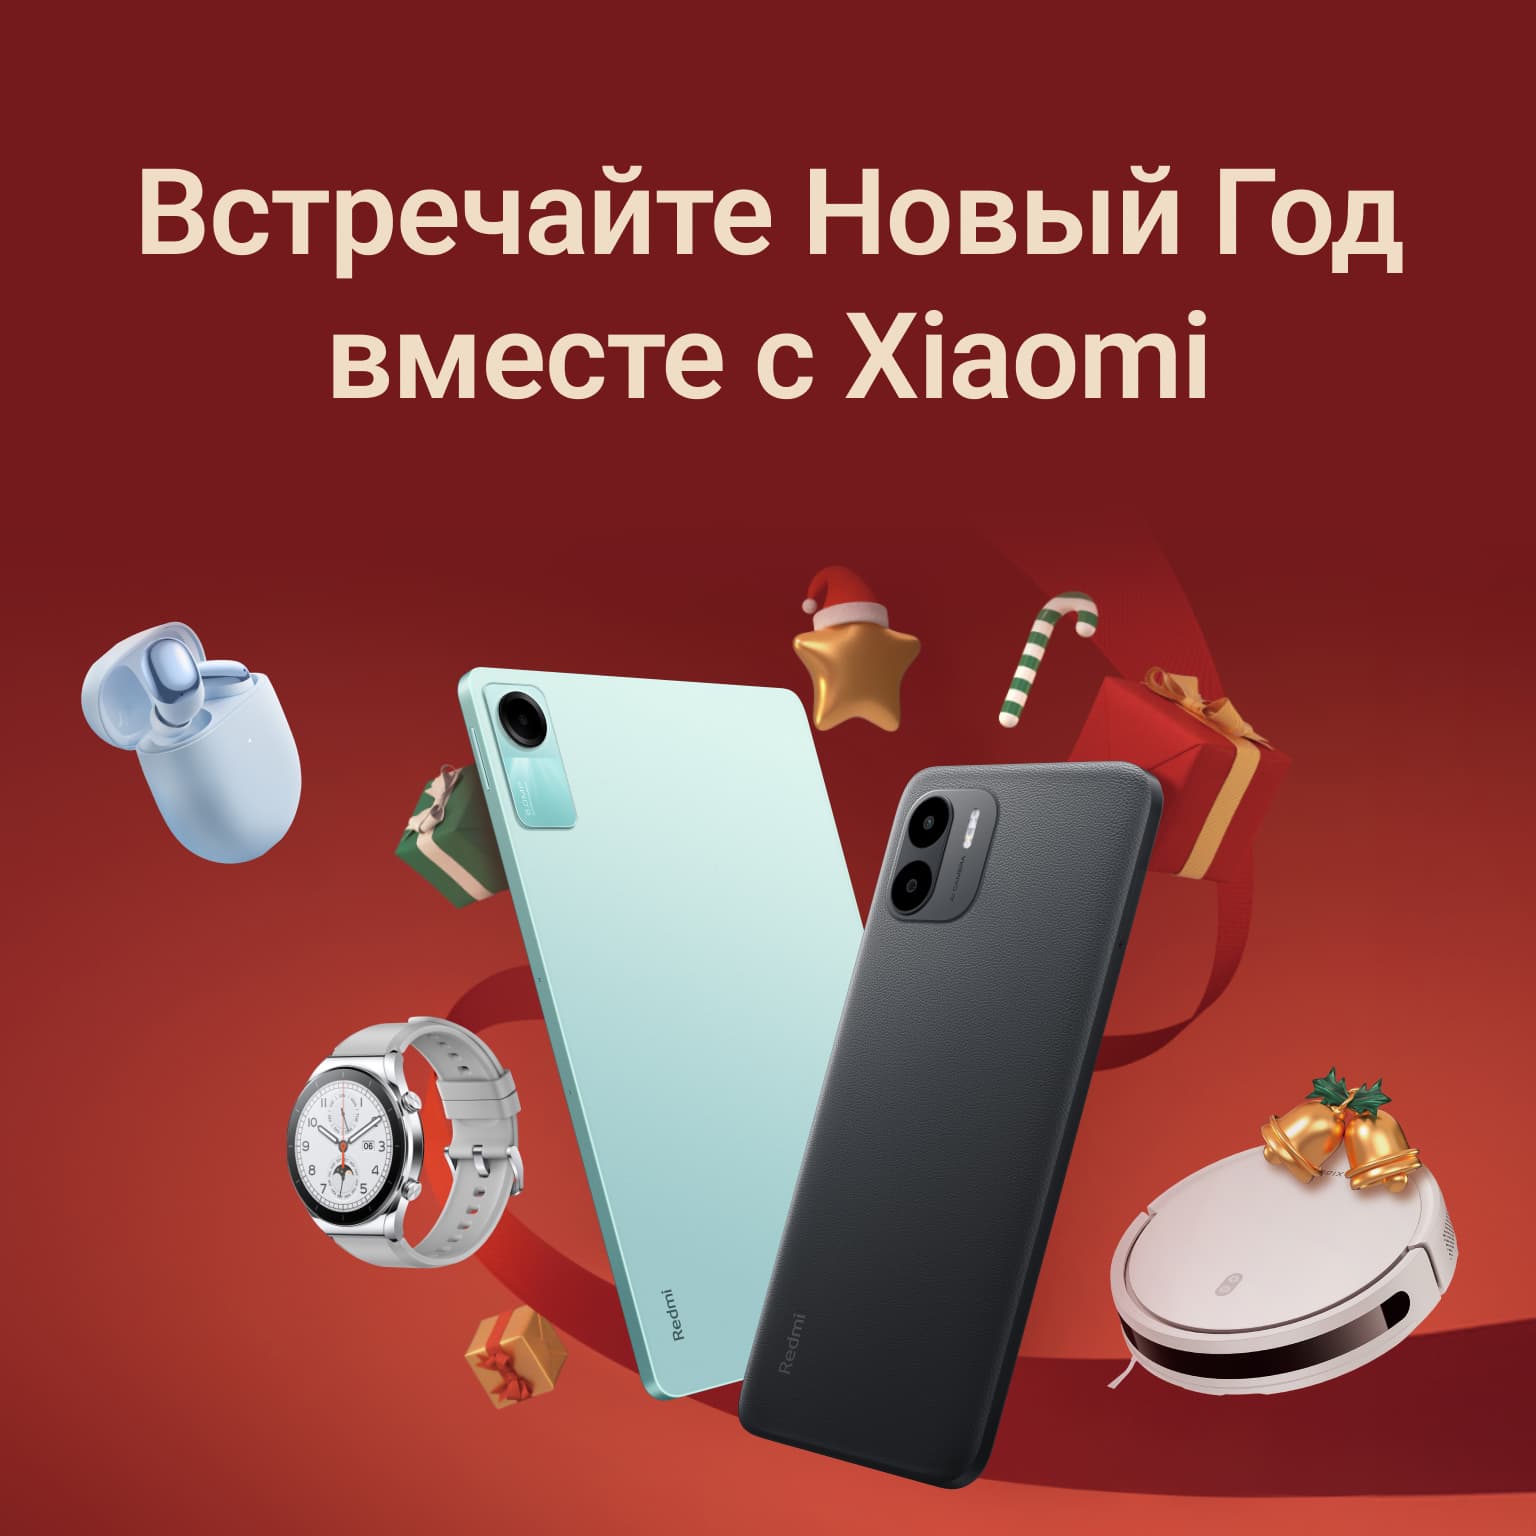 Встречайте Новый Год вместе c Xiaomi